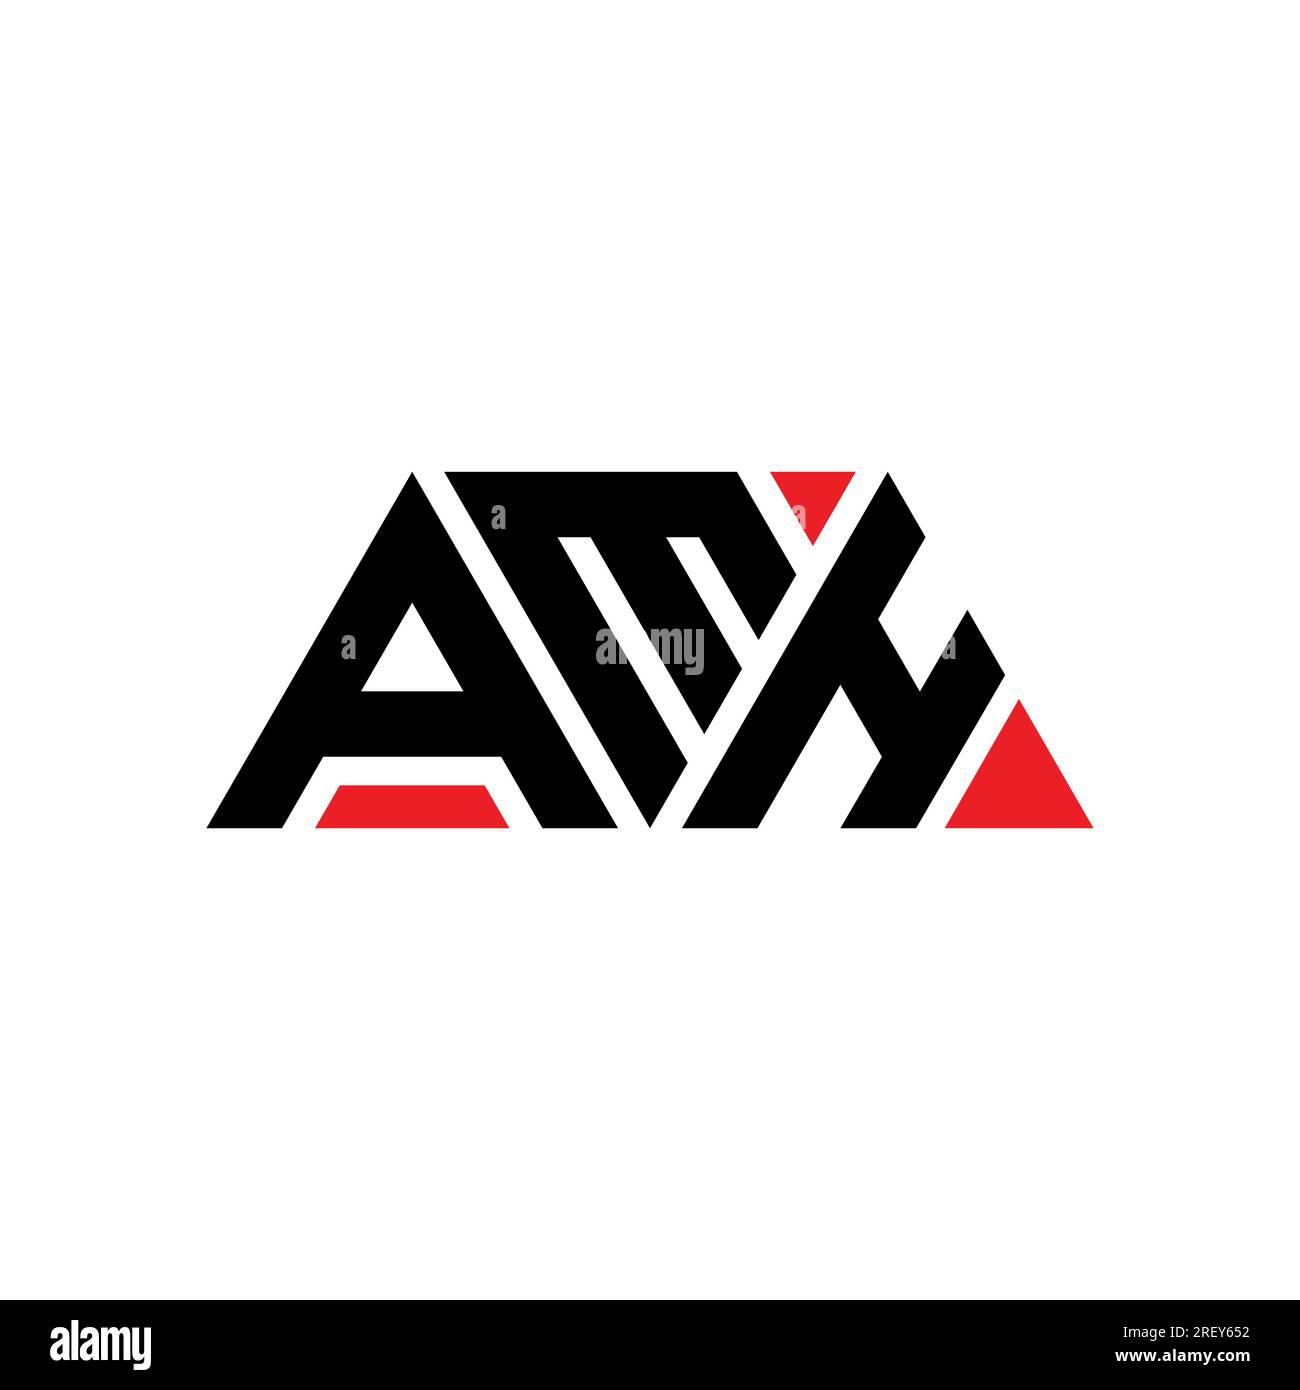 Logo mit AMH-Dreiecksbuchstaben in Dreiecksform. AMH-Dreieck-Logo-Monogramm. AMH-Dreieck-Vektor-Logo-Vorlage mit roter Farbe. AMH Triangul Stock Vektor